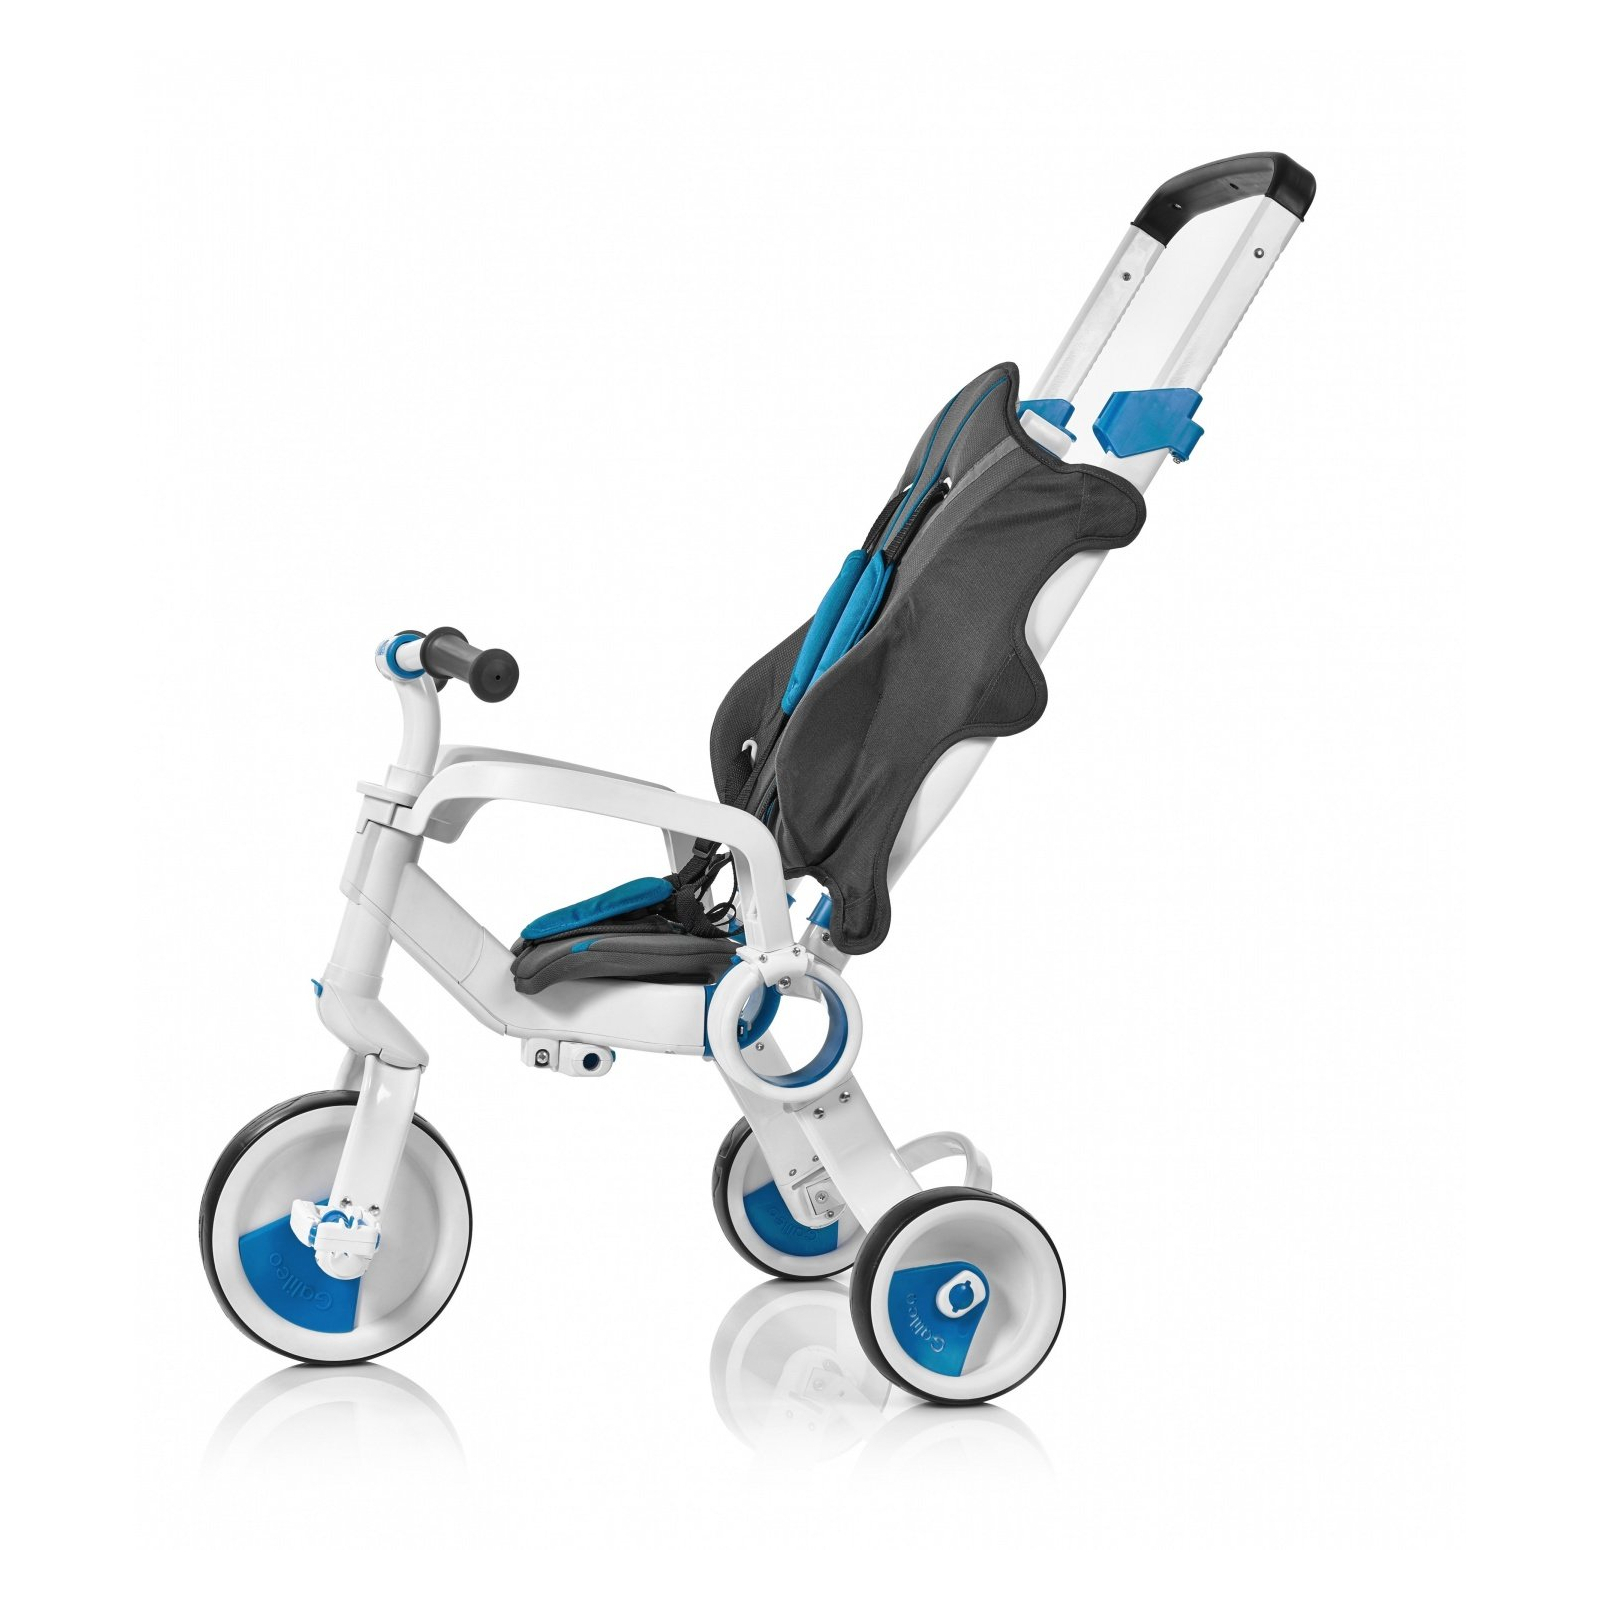 Дитячий велосипед Galileo Strollcycle Синий (G-1001-B) зображення 2